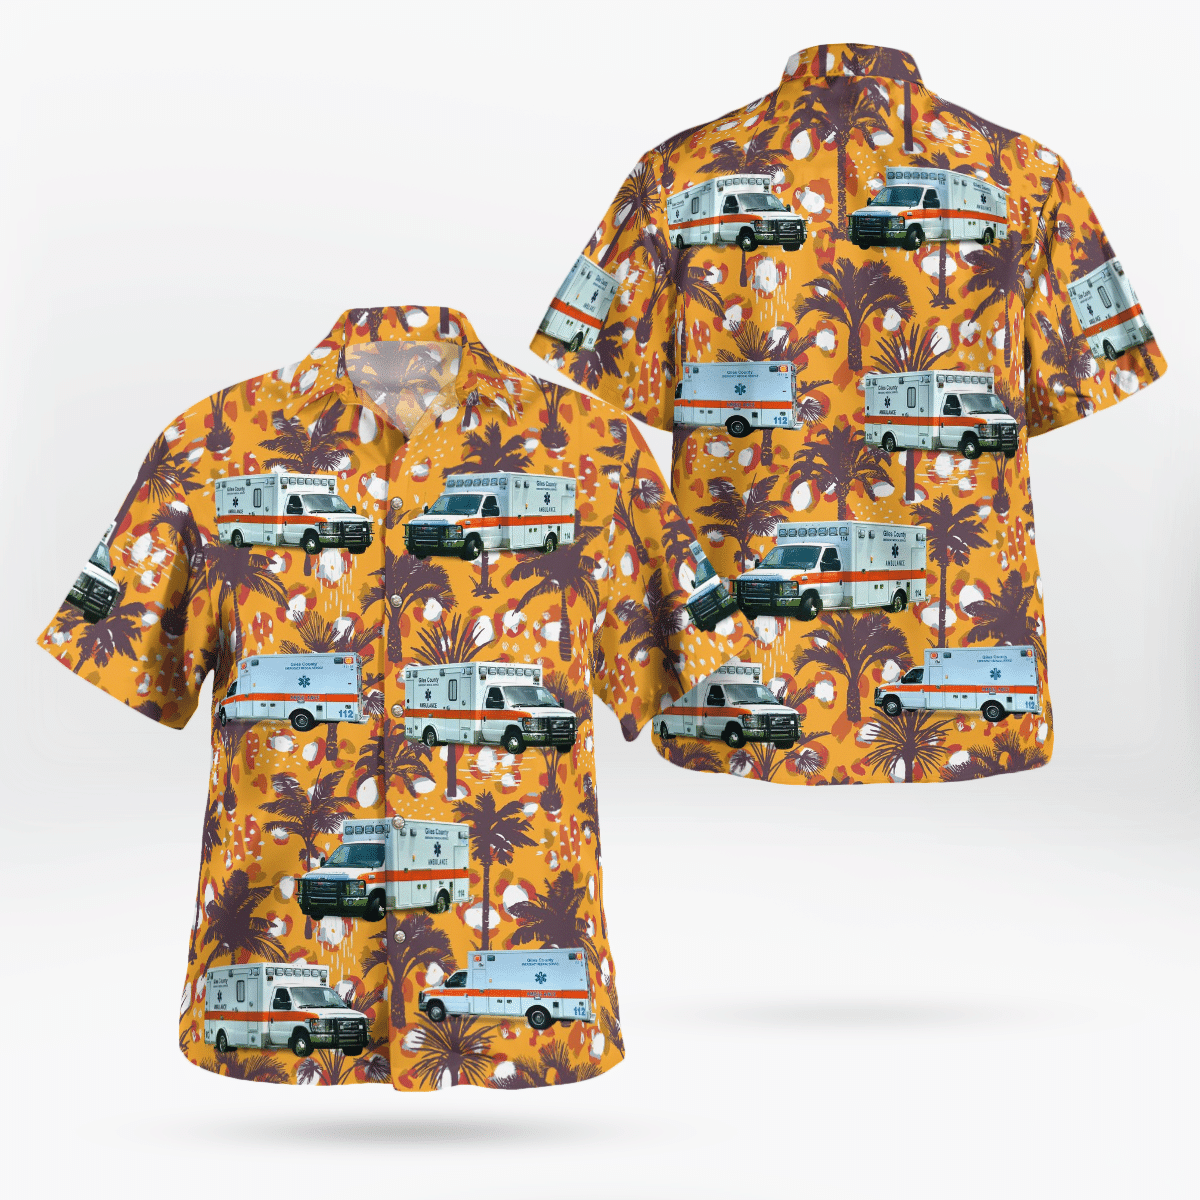 Best Hawaiian shirts 2022 292